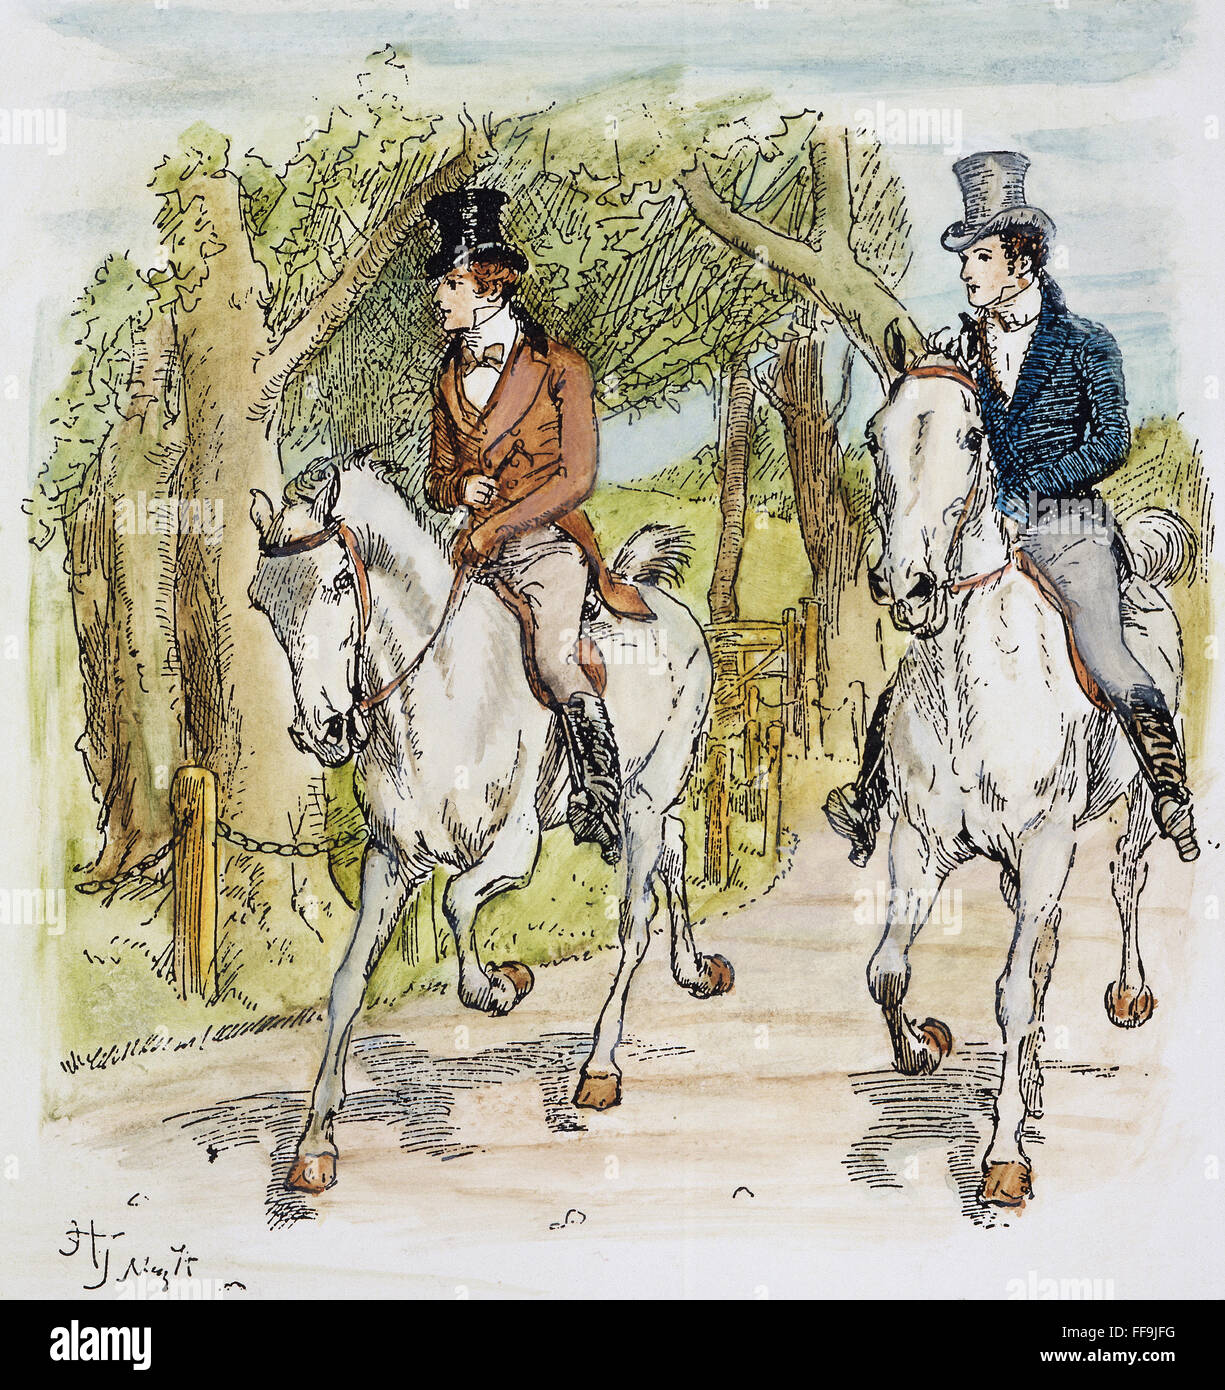 JANE AUSTEN : ILLUSTRATION. /NMister Bingley et M. Darcy équitation. Illustration par Hugh Thomson pour une édition de 1894 du roman de Jane Austen "Orgueil et préjugés", publié pour la première fois en 1813. Banque D'Images